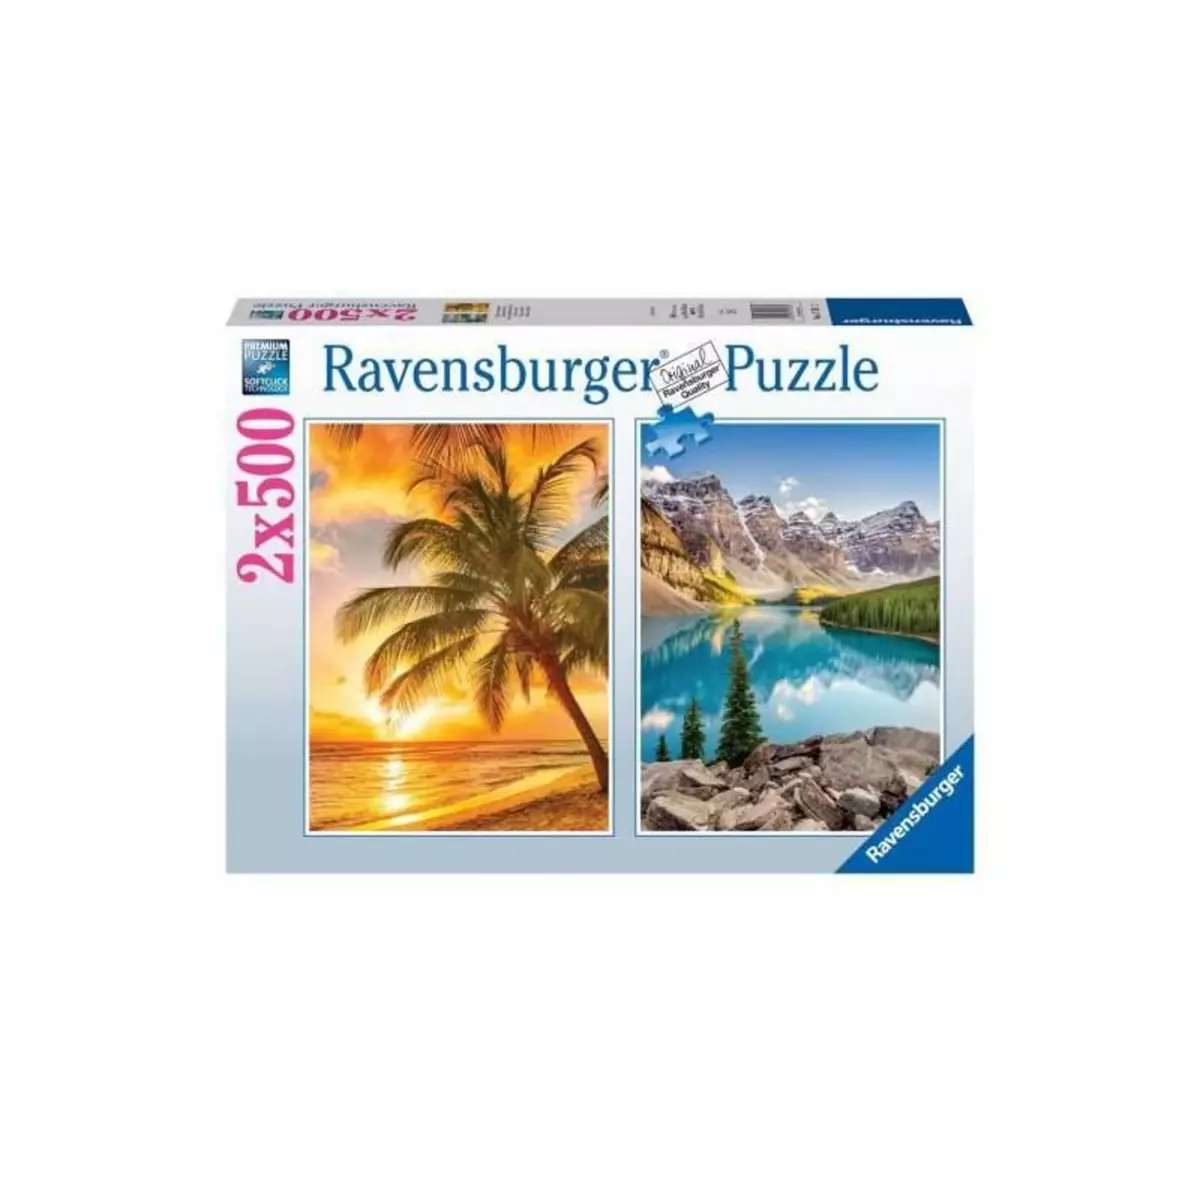 RAVENSBURGER Puzzle 2x500 pieces - Plage et montagnes - Puzzle adultes Ravensburger - Des 10 ans - 17267